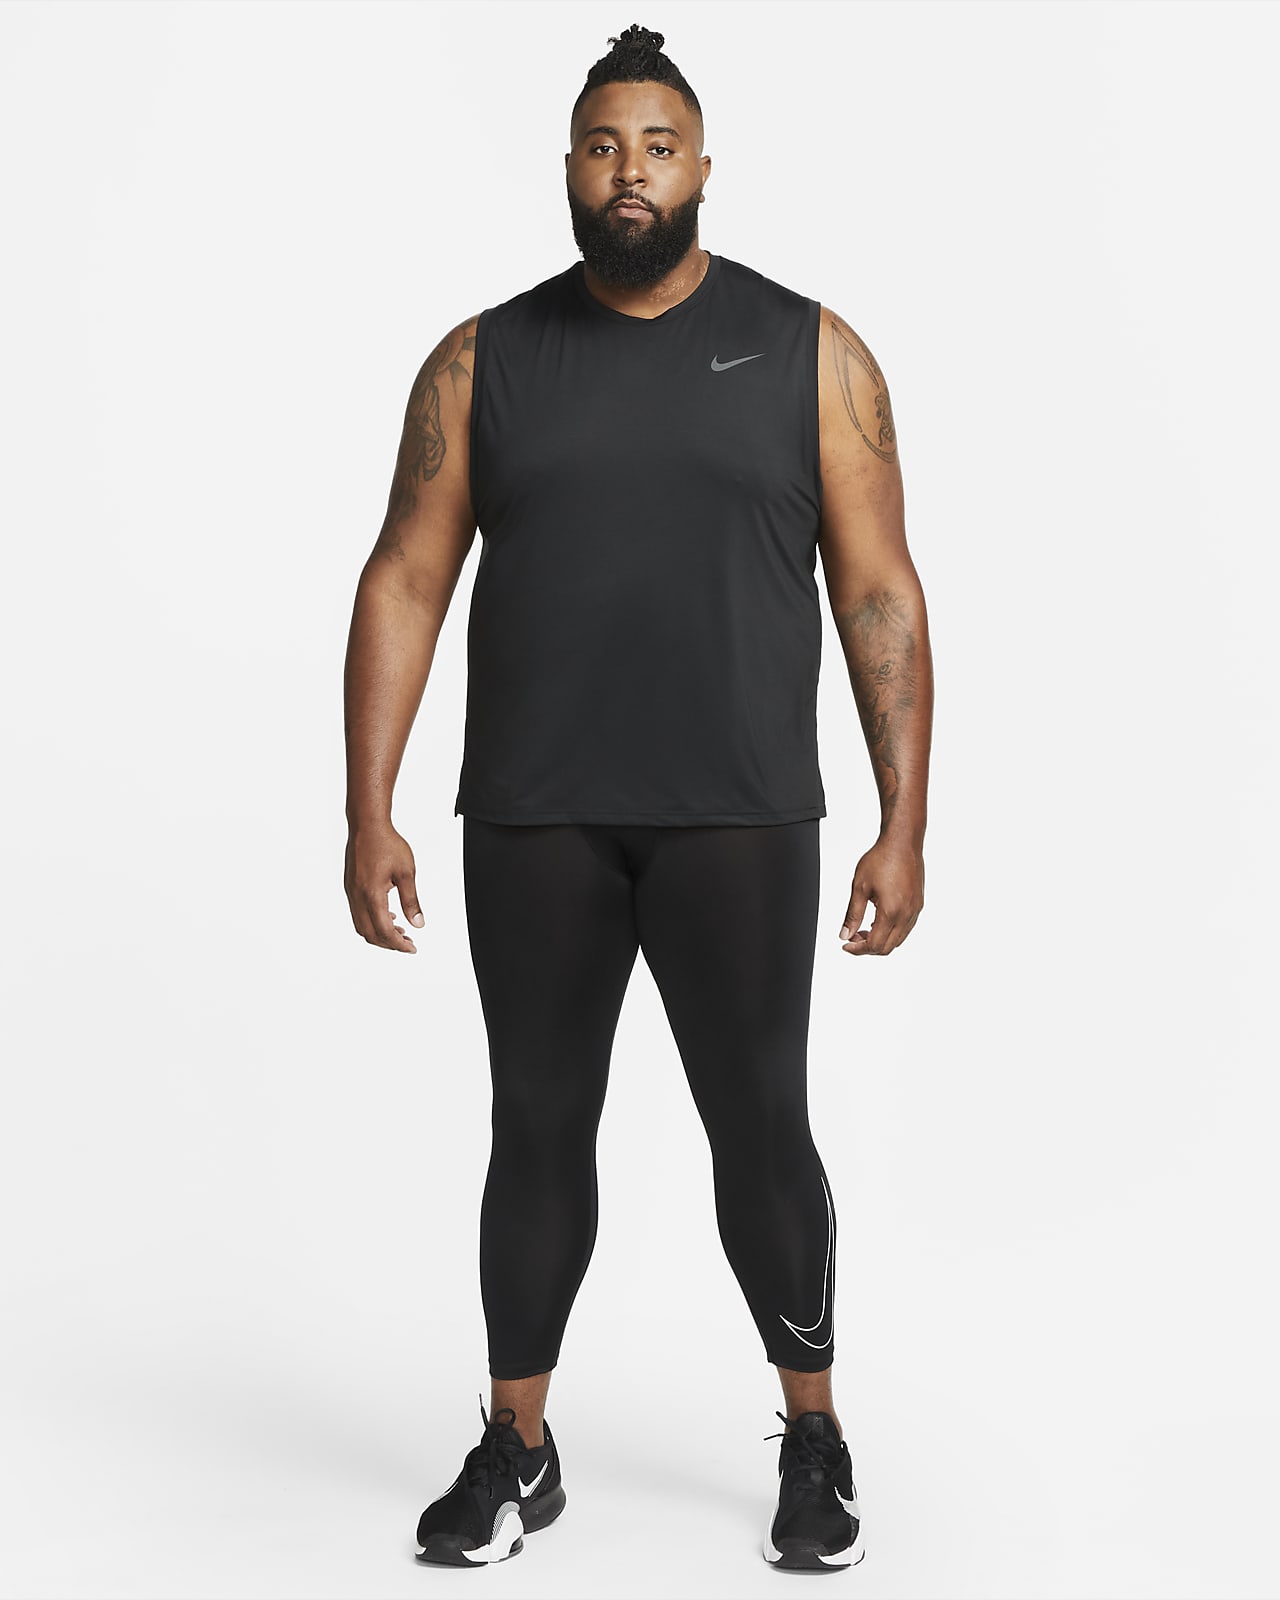 Legging 3/4 Nike Pro Dri-FIT pour Homme